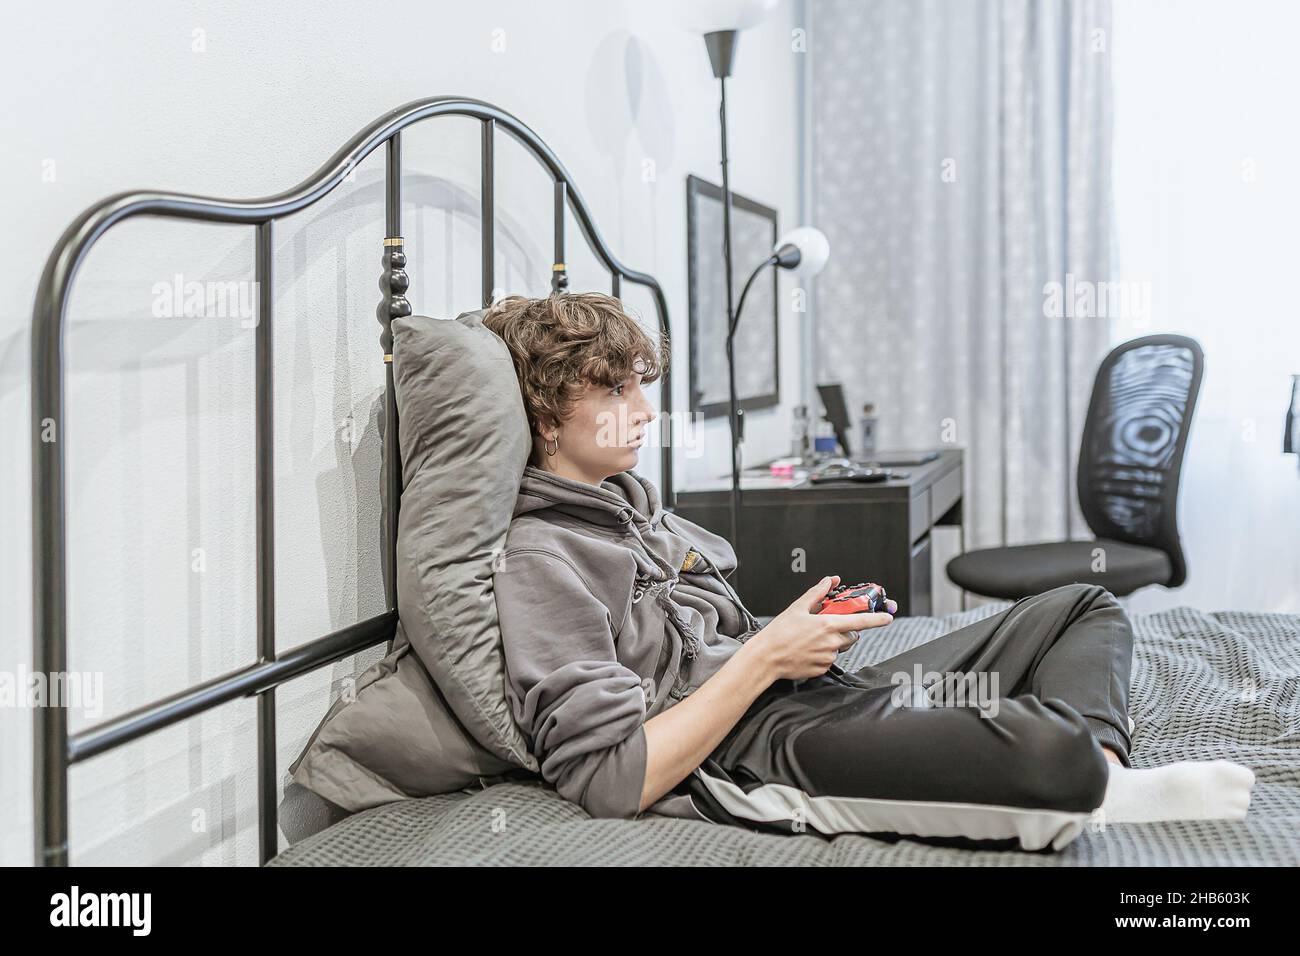 Teenager-Mädchen mit kurzen braunen lockigen Haaren, bekleidet mit ungepflegten Heimkleidung, sitzt auf einem ungefertigten Bett und spielt auf der Computerkonsole. Leidenschaft für Computer Stockfoto